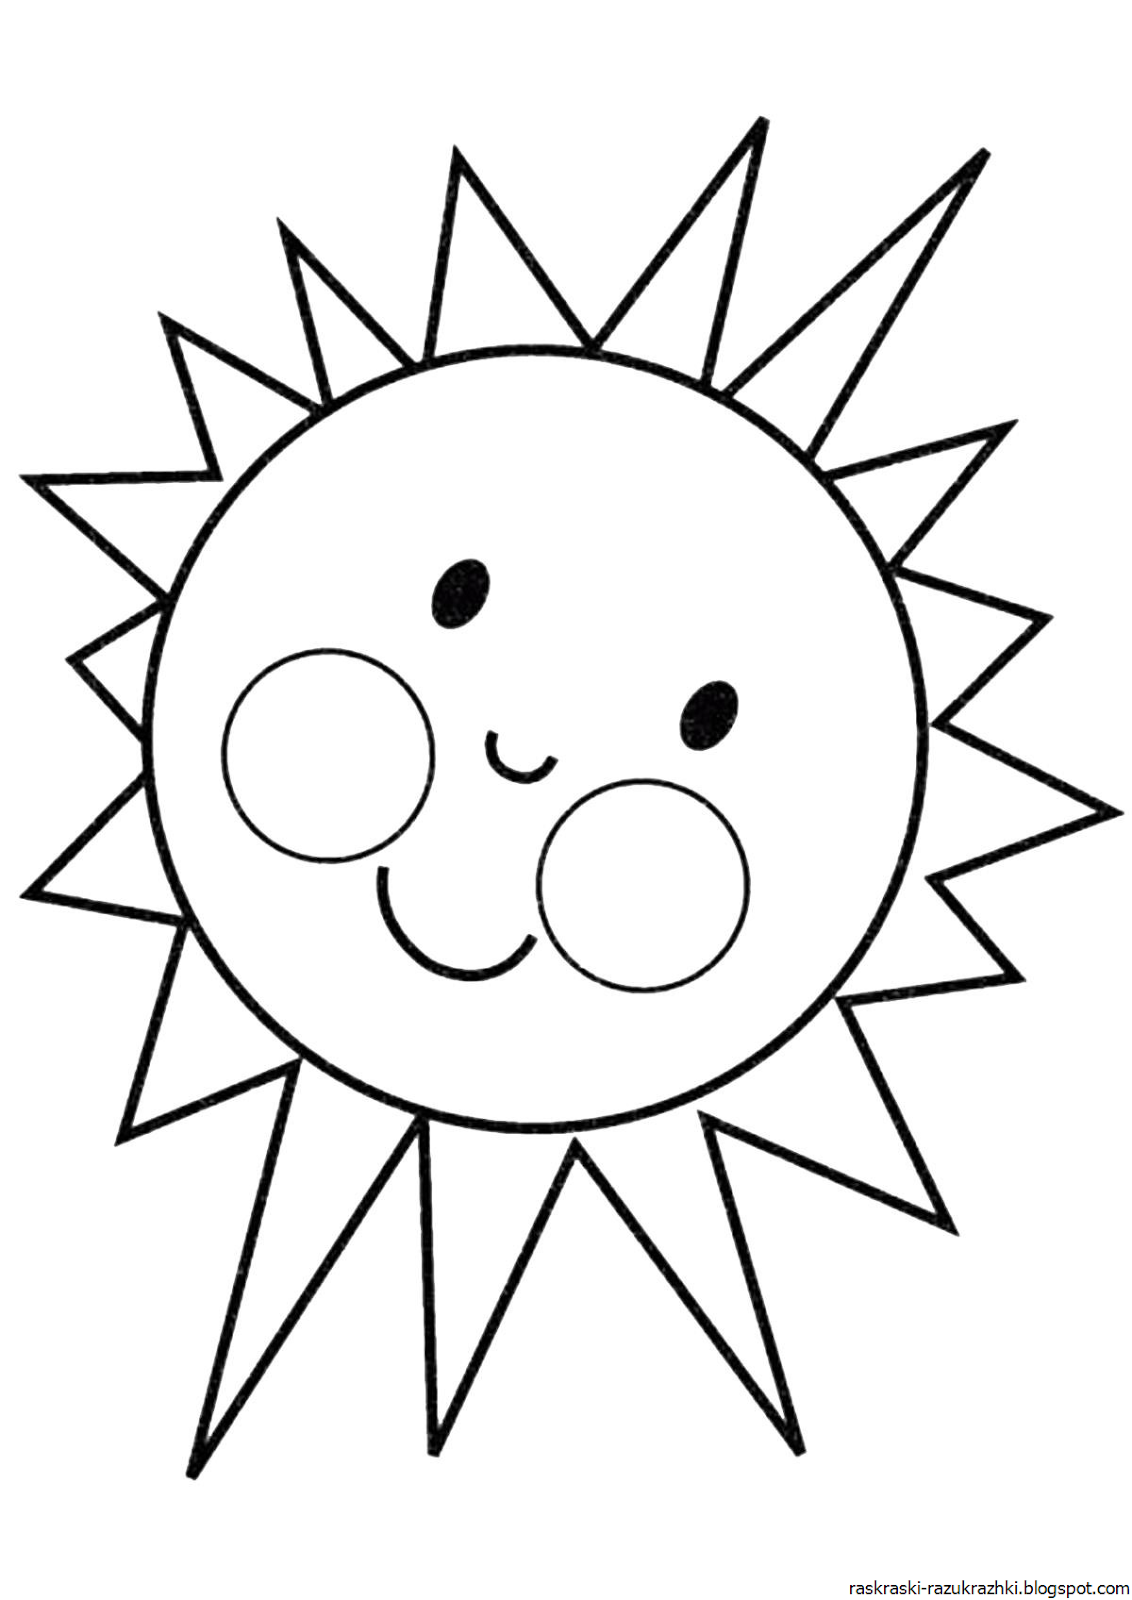 Раскраска. Солнышко. Солнце раскраска. Солнышко раскраска для детей. Солнце раскраска для детей. Раскраски для детей 3 лет солнышко